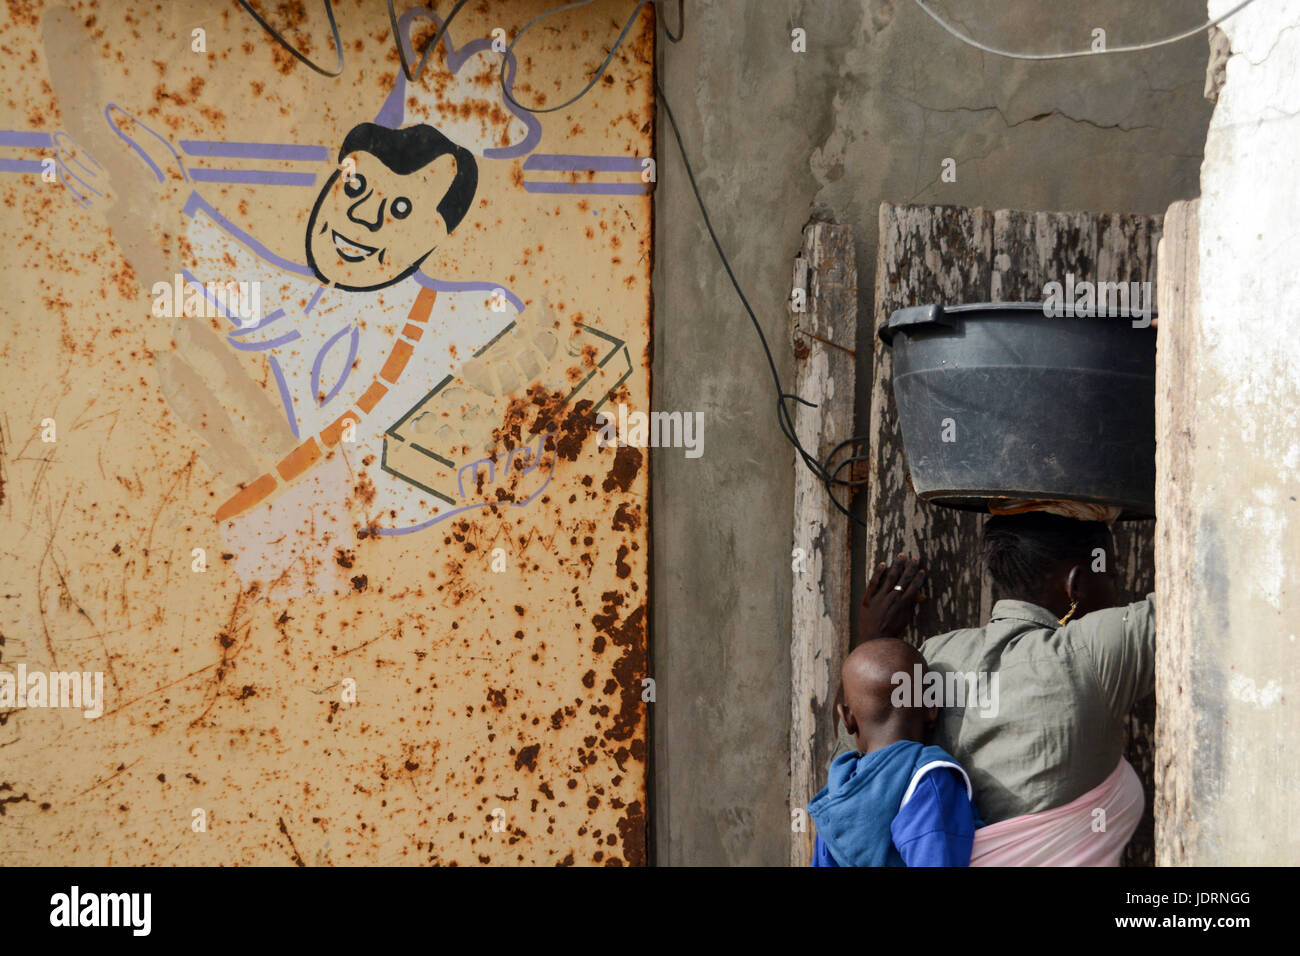 Dessin d'un cuisinier sur le mur rouillé. Femme Sénégalaise est porteur d'un seau en plastique sur la tête et a un enfant fixée à l'arrière. Yoff, Dakar, Sénégal Banque D'Images